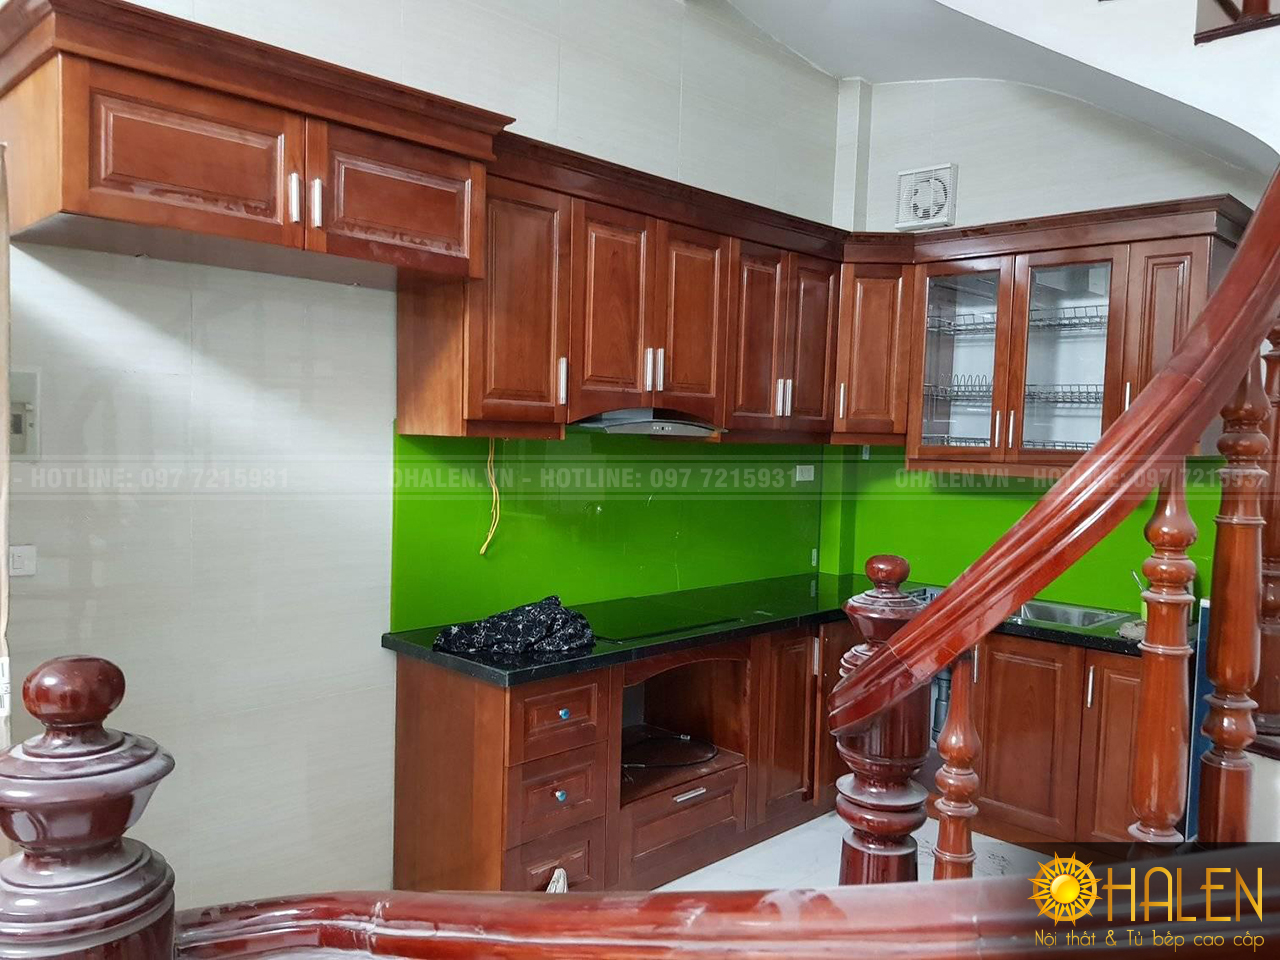 Bộ tủ bếp gỗ xoan đào màu cánh gián kết hợp cùng kính bếp màu xanh lá đẹp ấn tượng